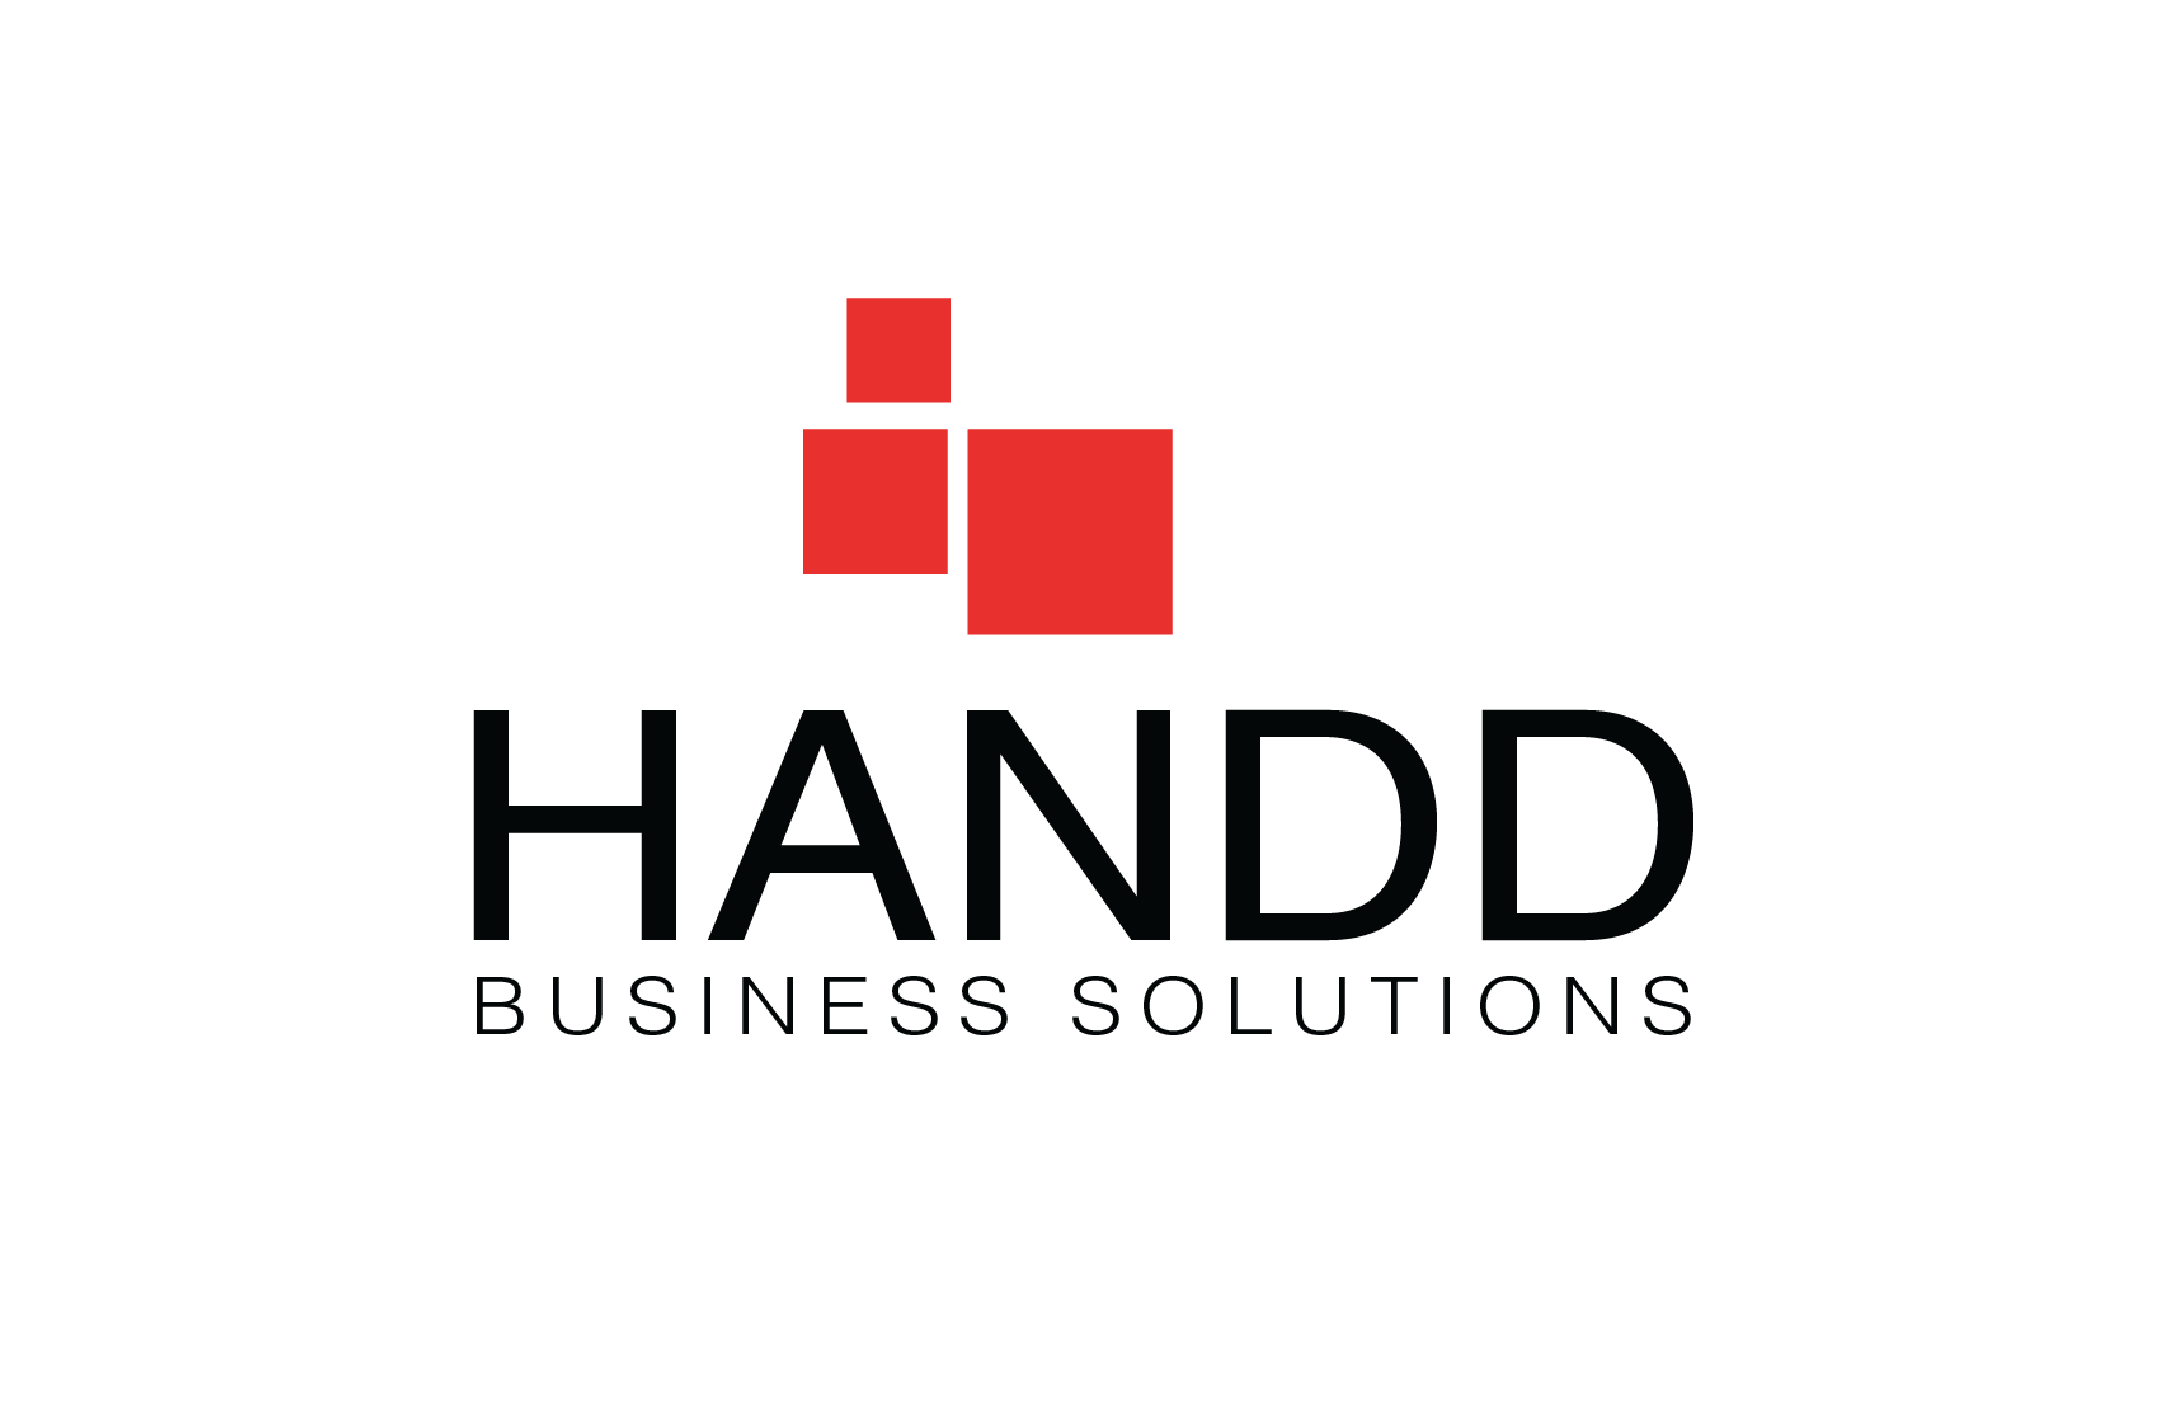 HANDD logo